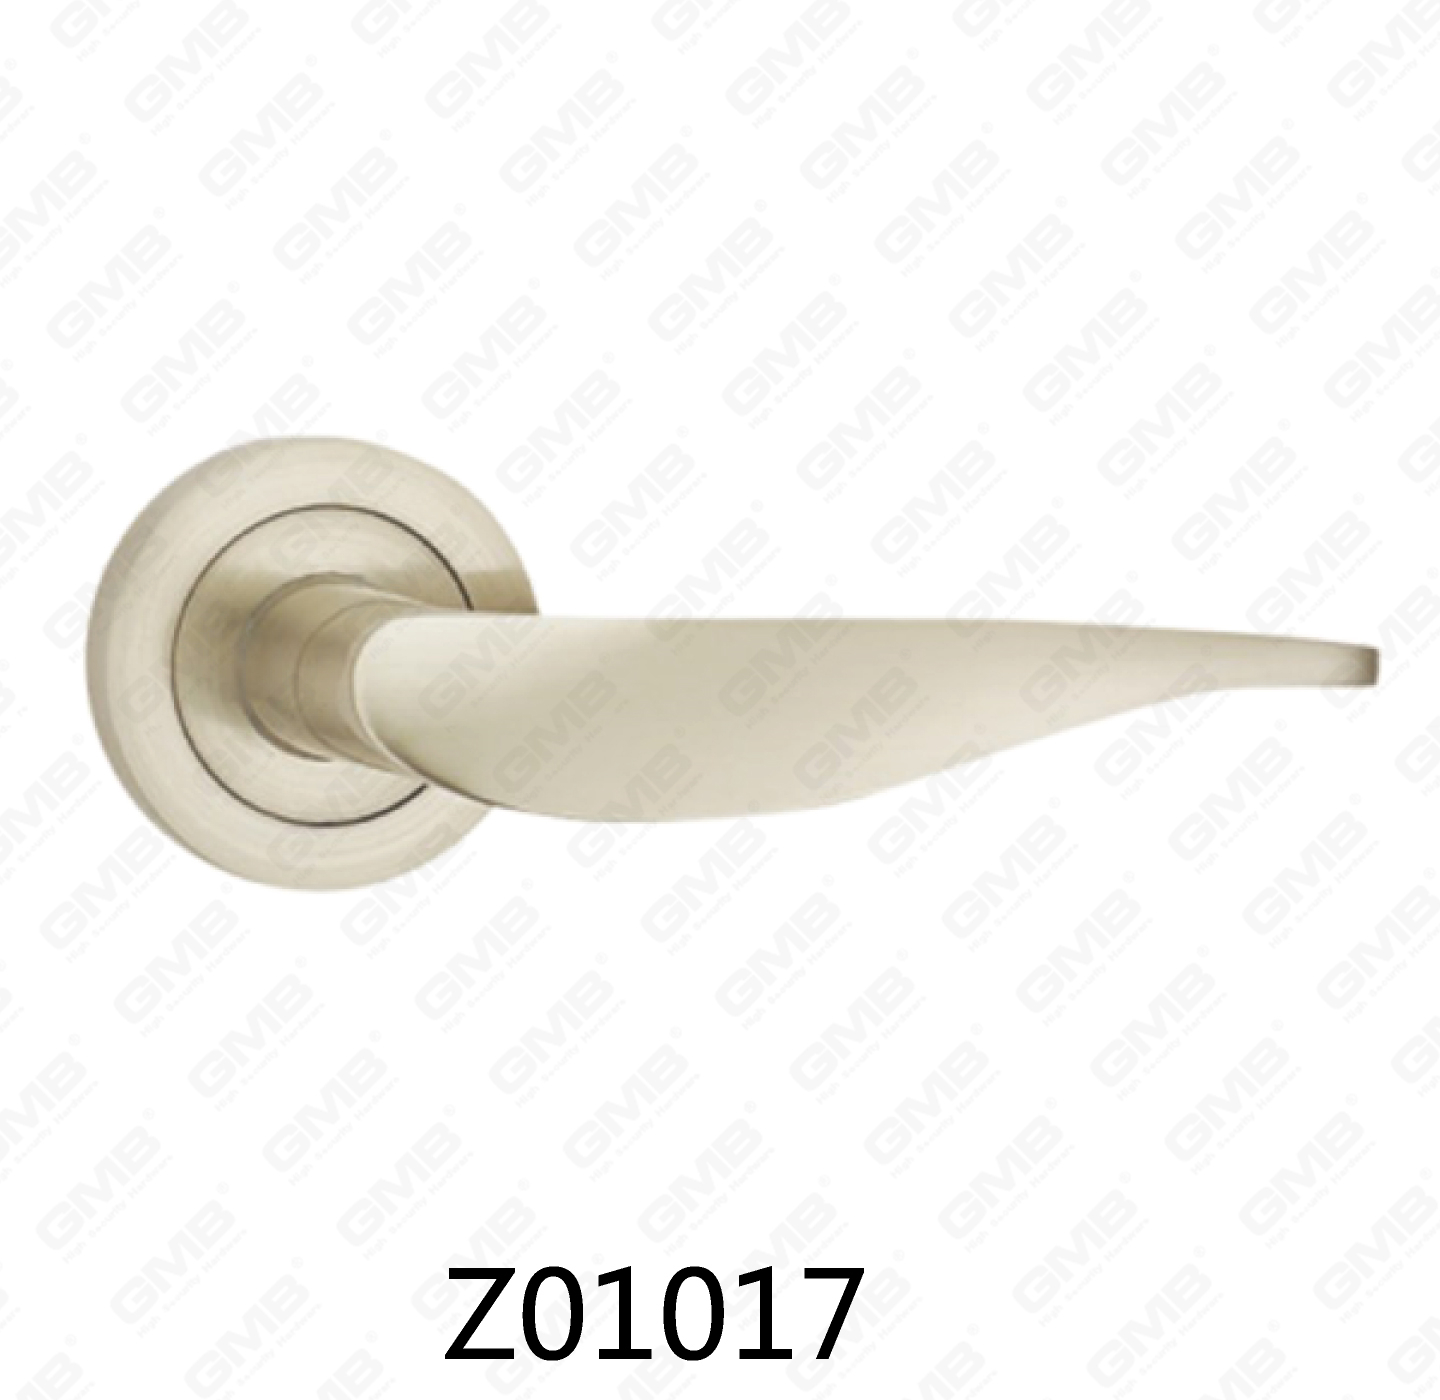 ידית דלת רוזטת אלומיניום מסגסוגת אבץ של Zamak עם רוזטה עגולה (Z01017)